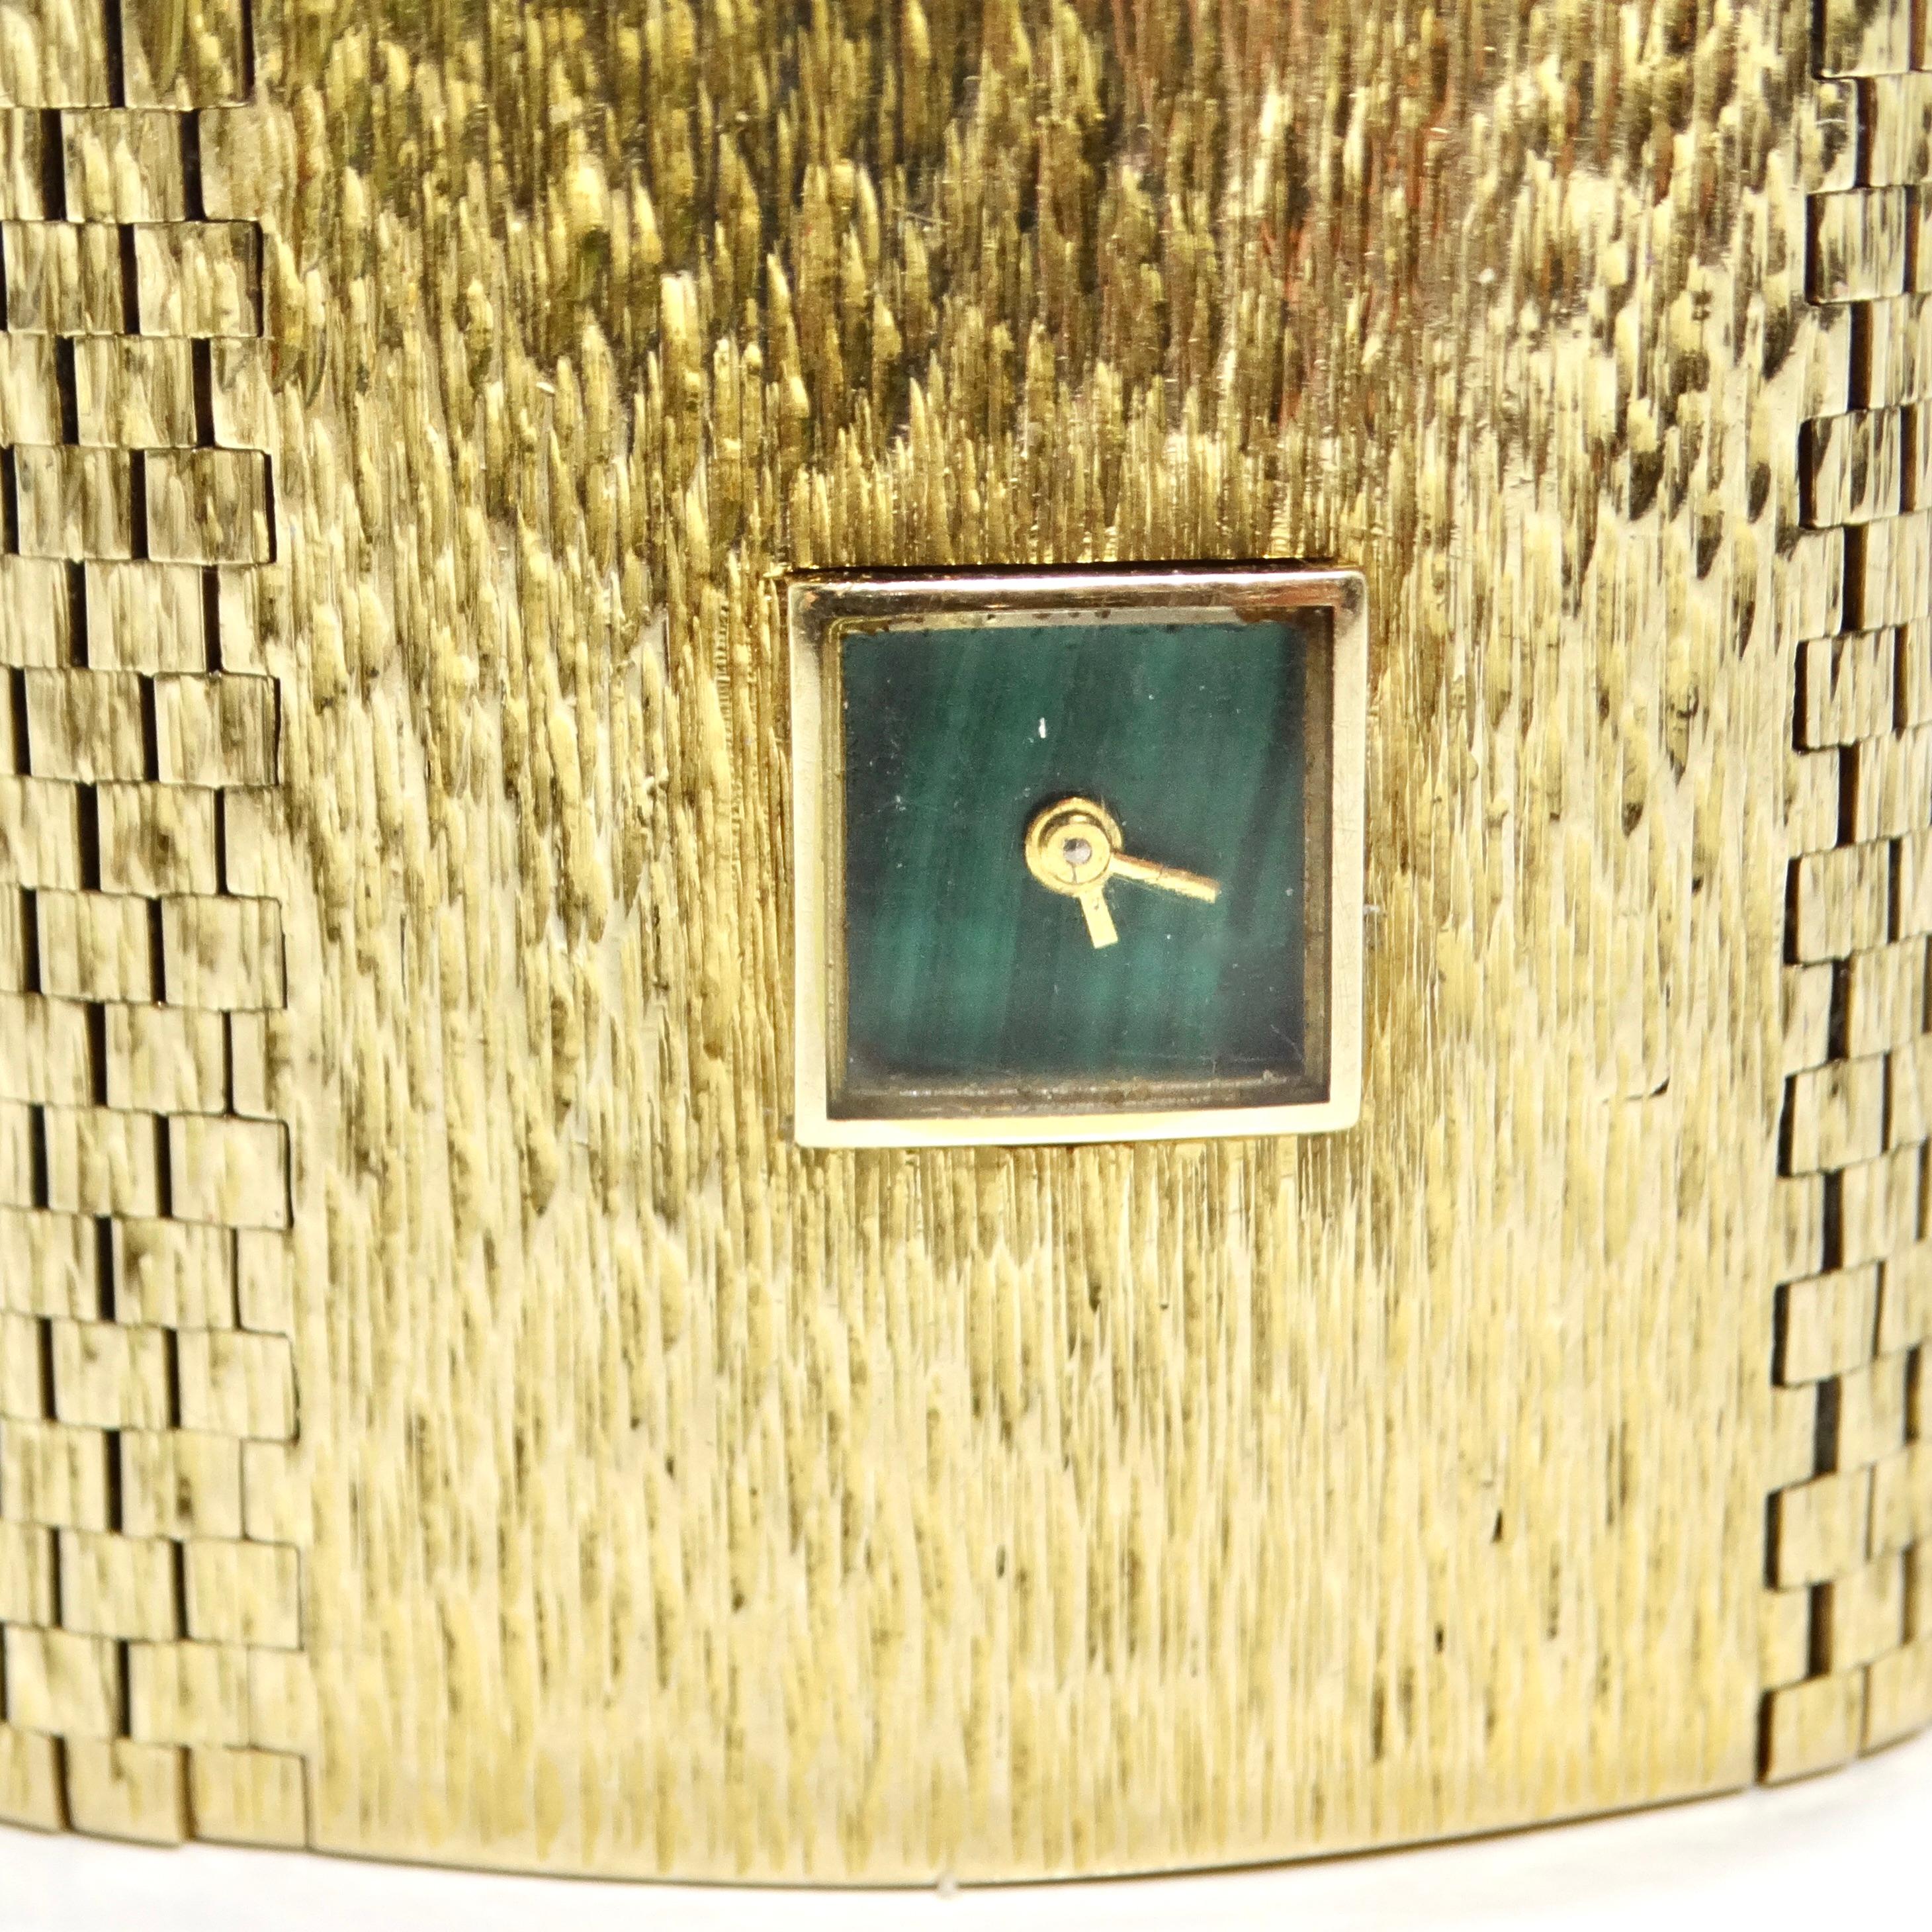 Voici la montre bracelet Milner Gold Malachite des années 1970, une étonnante pièce d'horlogerie vintage qui respire l'élégance et le luxe intemporels. Fabriquée en Angleterre dans les années 1970, cette montre-bracelet est un véritable témoignage